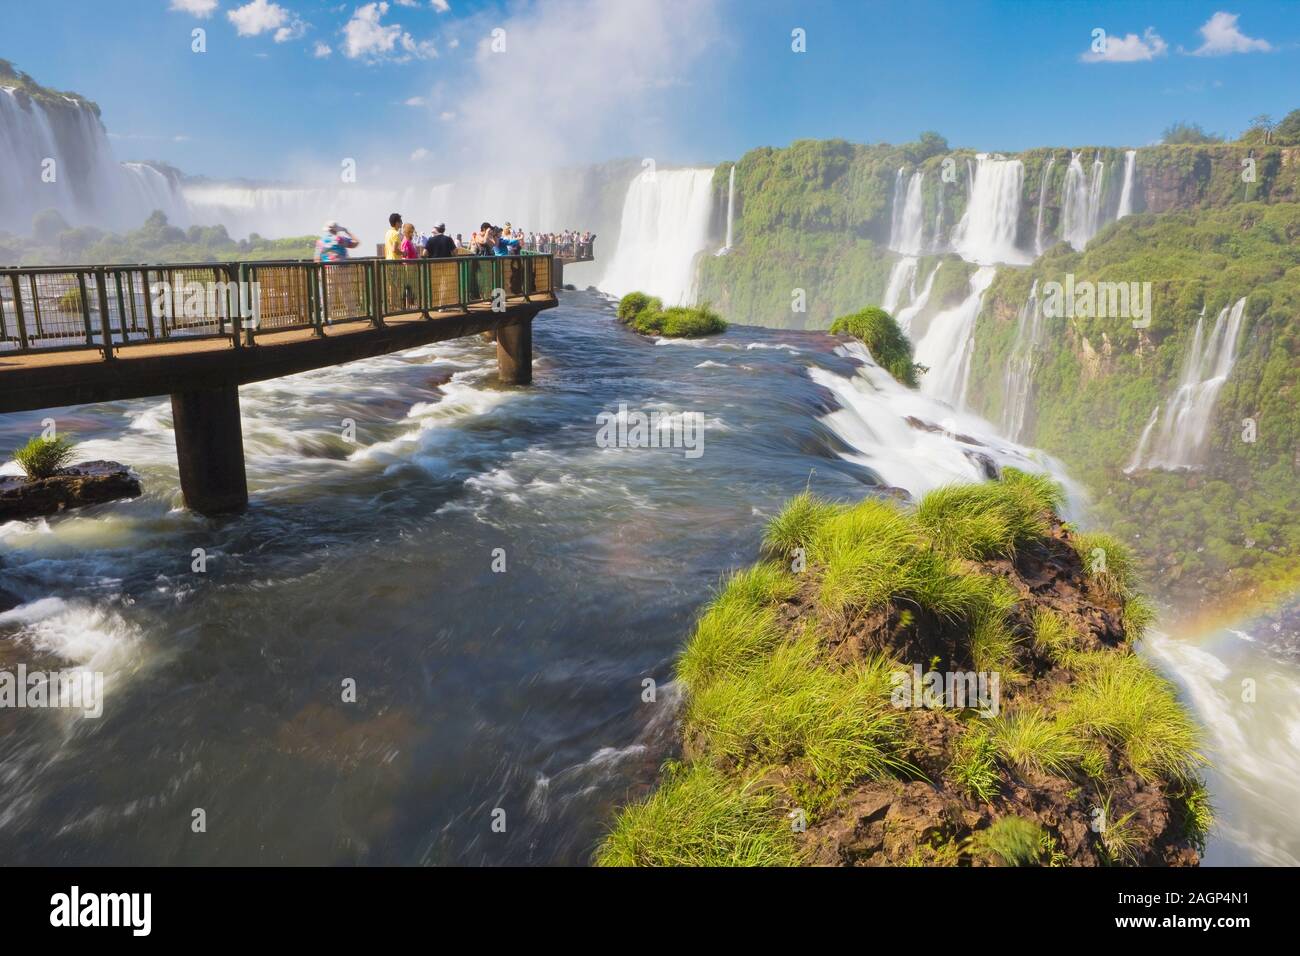 Le Parc National des chutes d'Iguacu, Brésil Banque D'Images